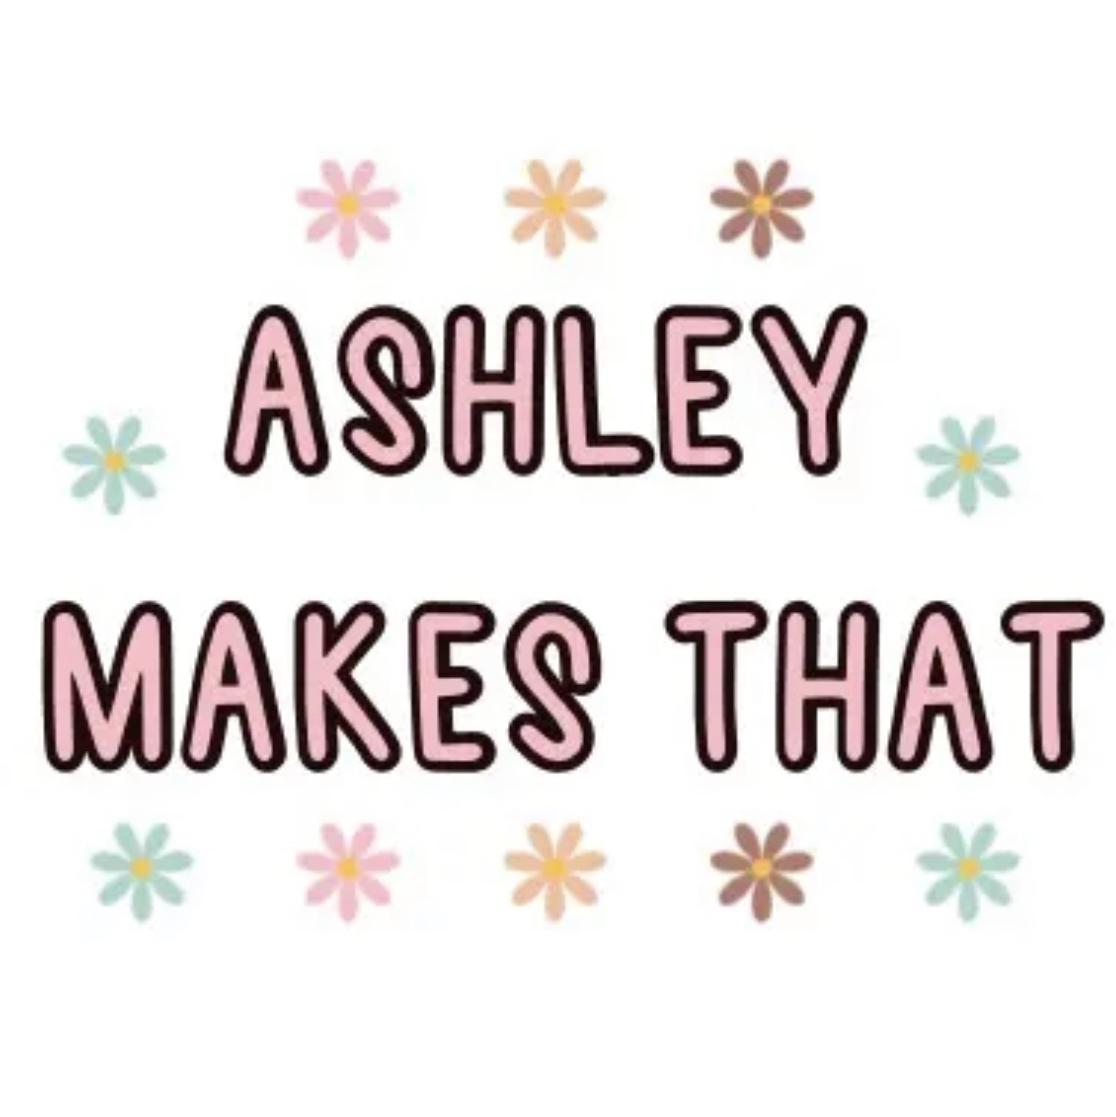 AshleyMakesThat's images